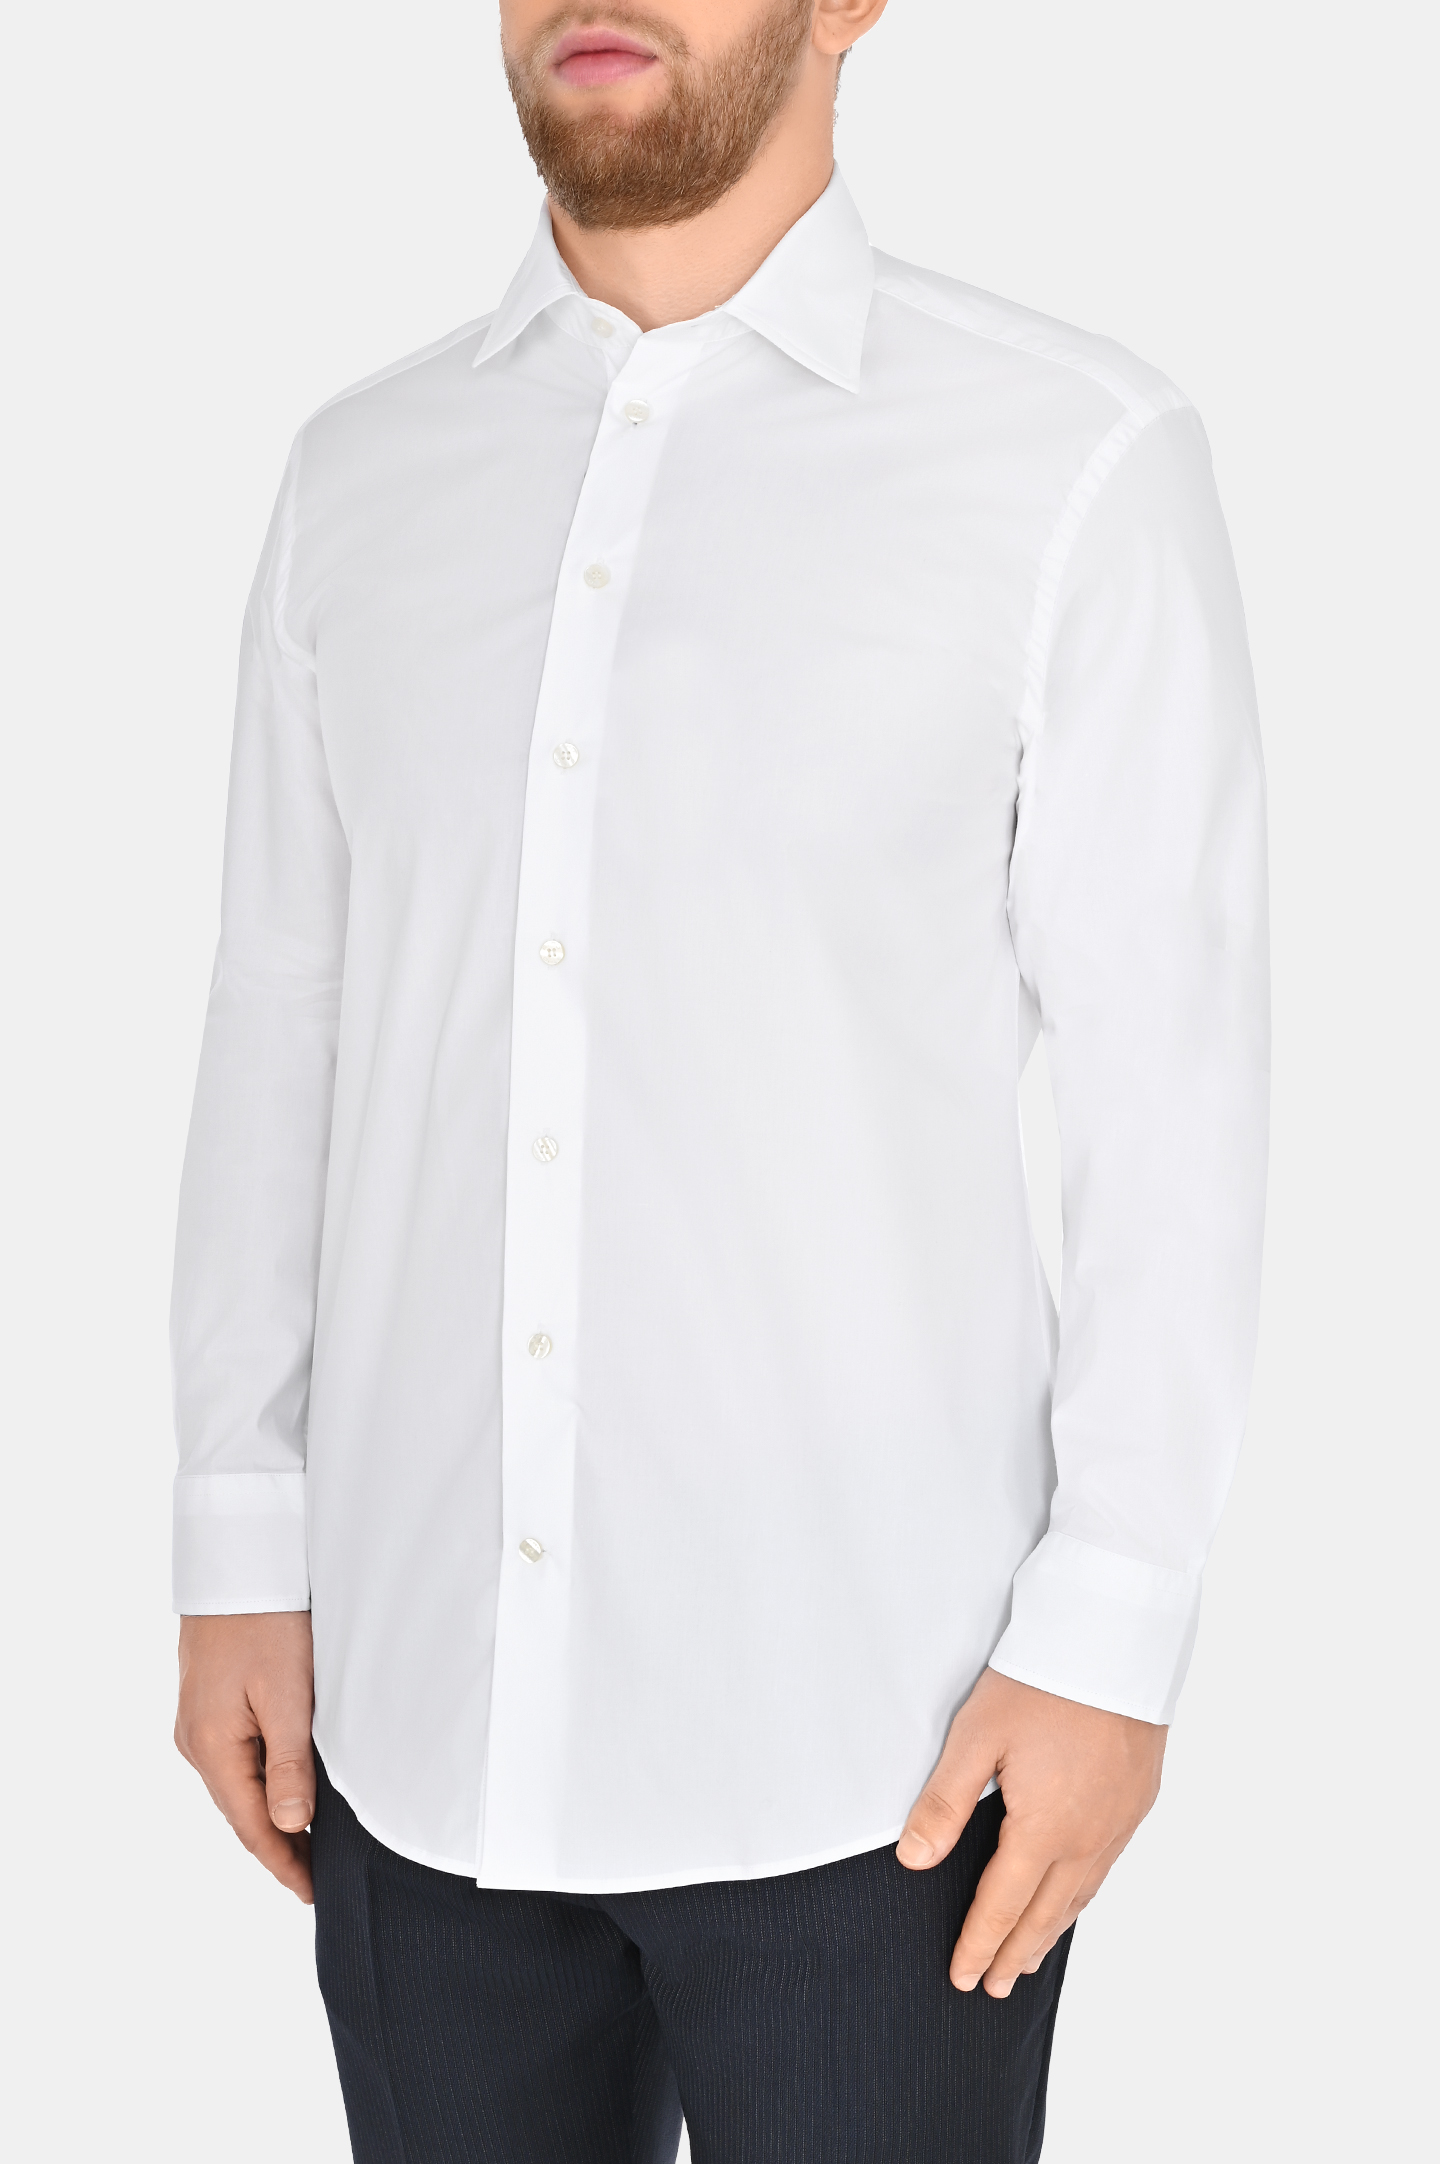 Рубашка из хлопка и эластана ETRO MRIB0001 AV202, цвет: Белый, Мужской